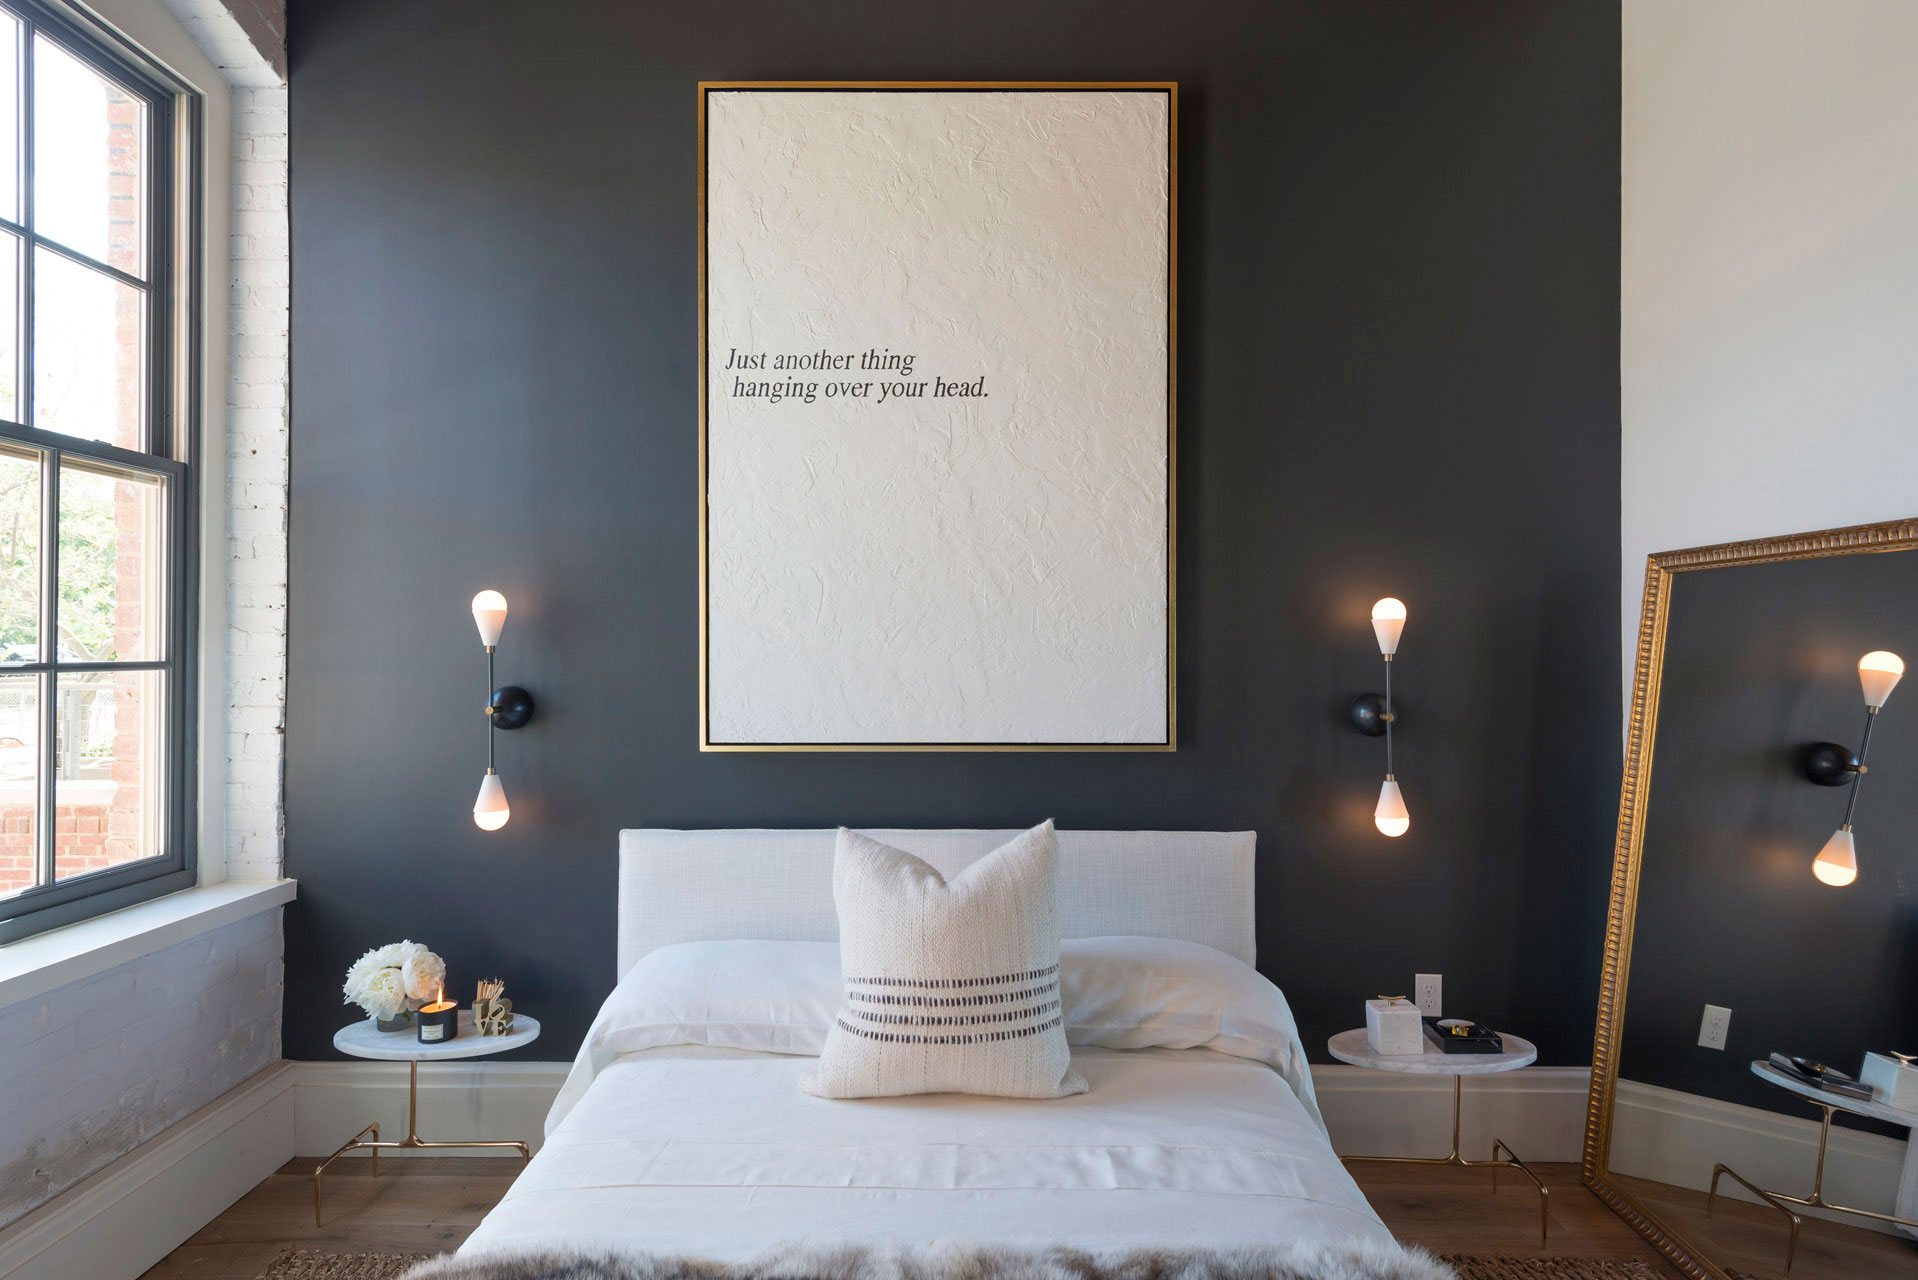 Un dormitorio muy Chic. – Interiores Chic | Blog de decoración nórdica